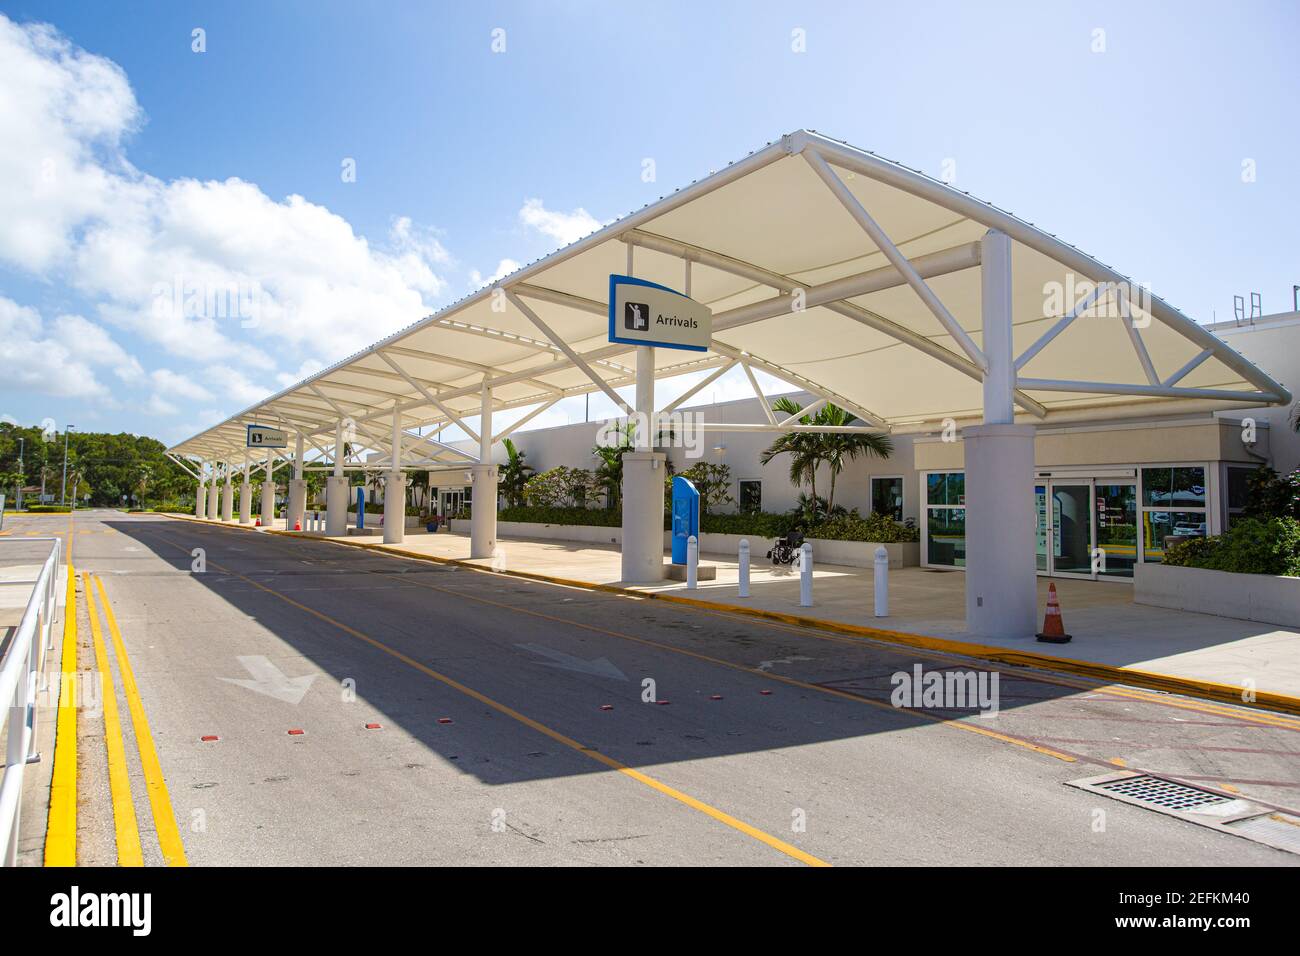 Vue imprenable sur le terminal de l'aéroport international Owen Roberts. Îles Caïmans, Georgetown - Grand Cayman. Ouvert par le Prince Charles 2019. Tourisme Banque D'Images